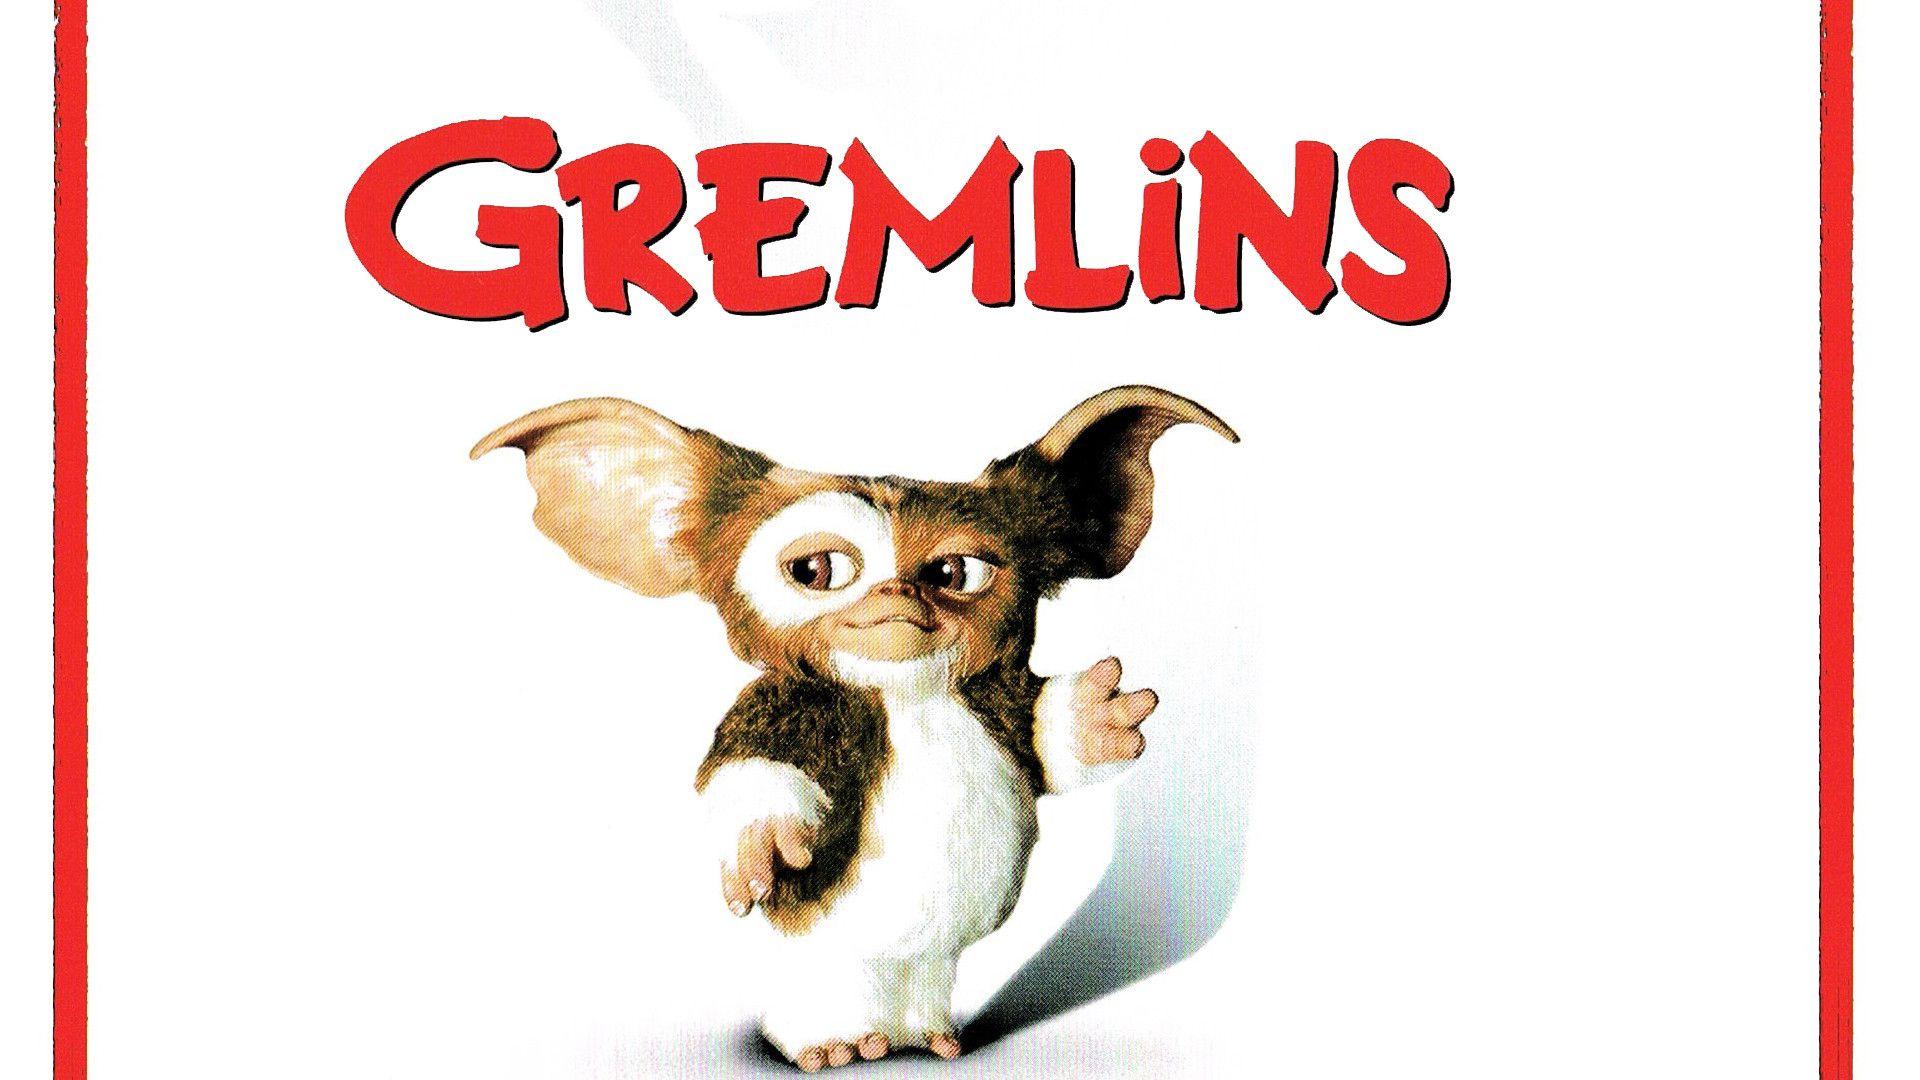 Gizmo Gremlins Wallpaper